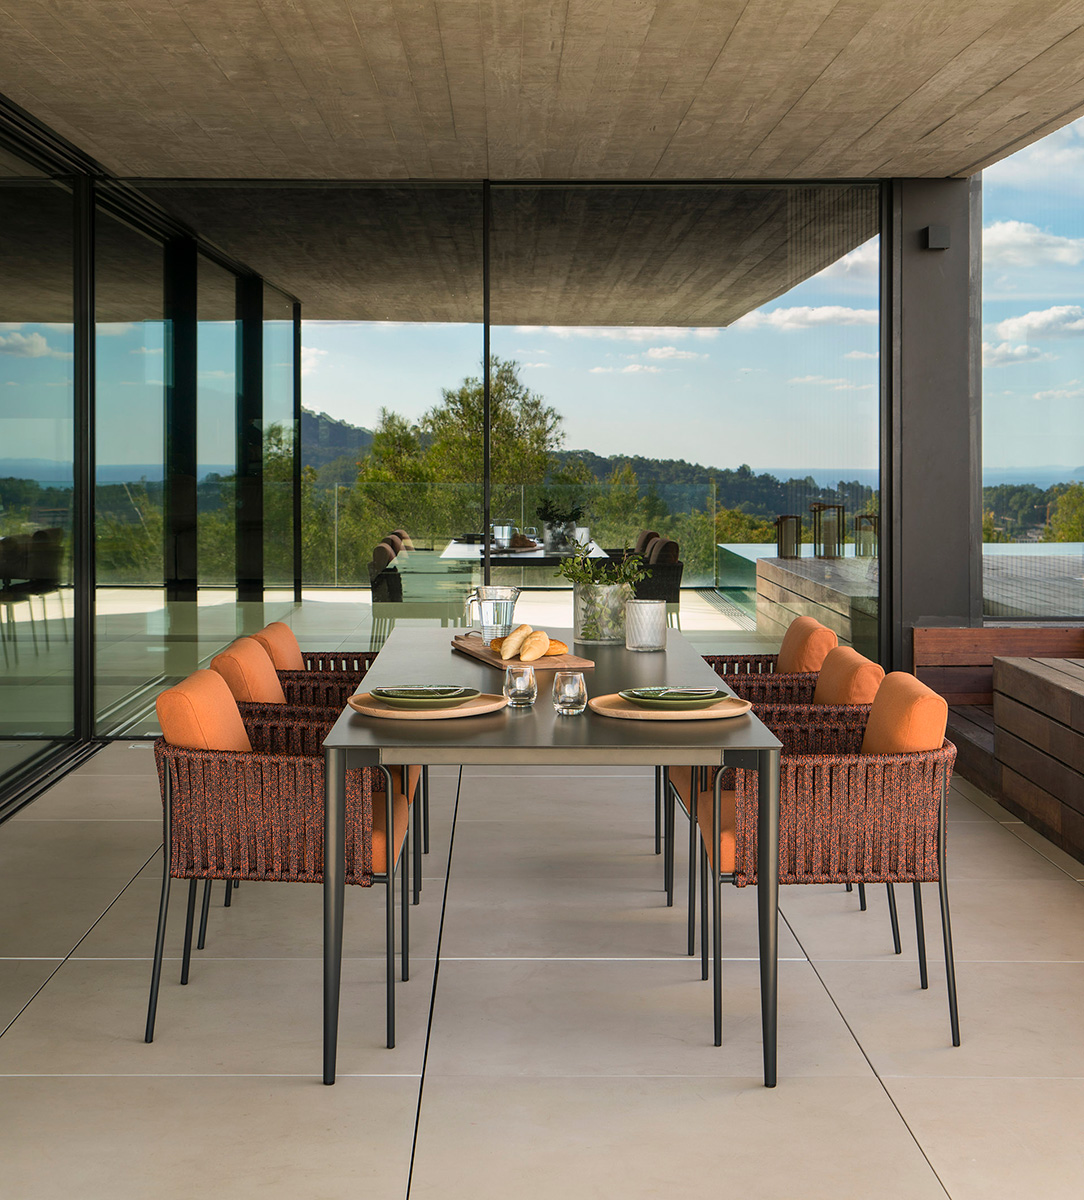 projekte - outdoor projekte - villa boscana, architektonische faszination auf mallorca